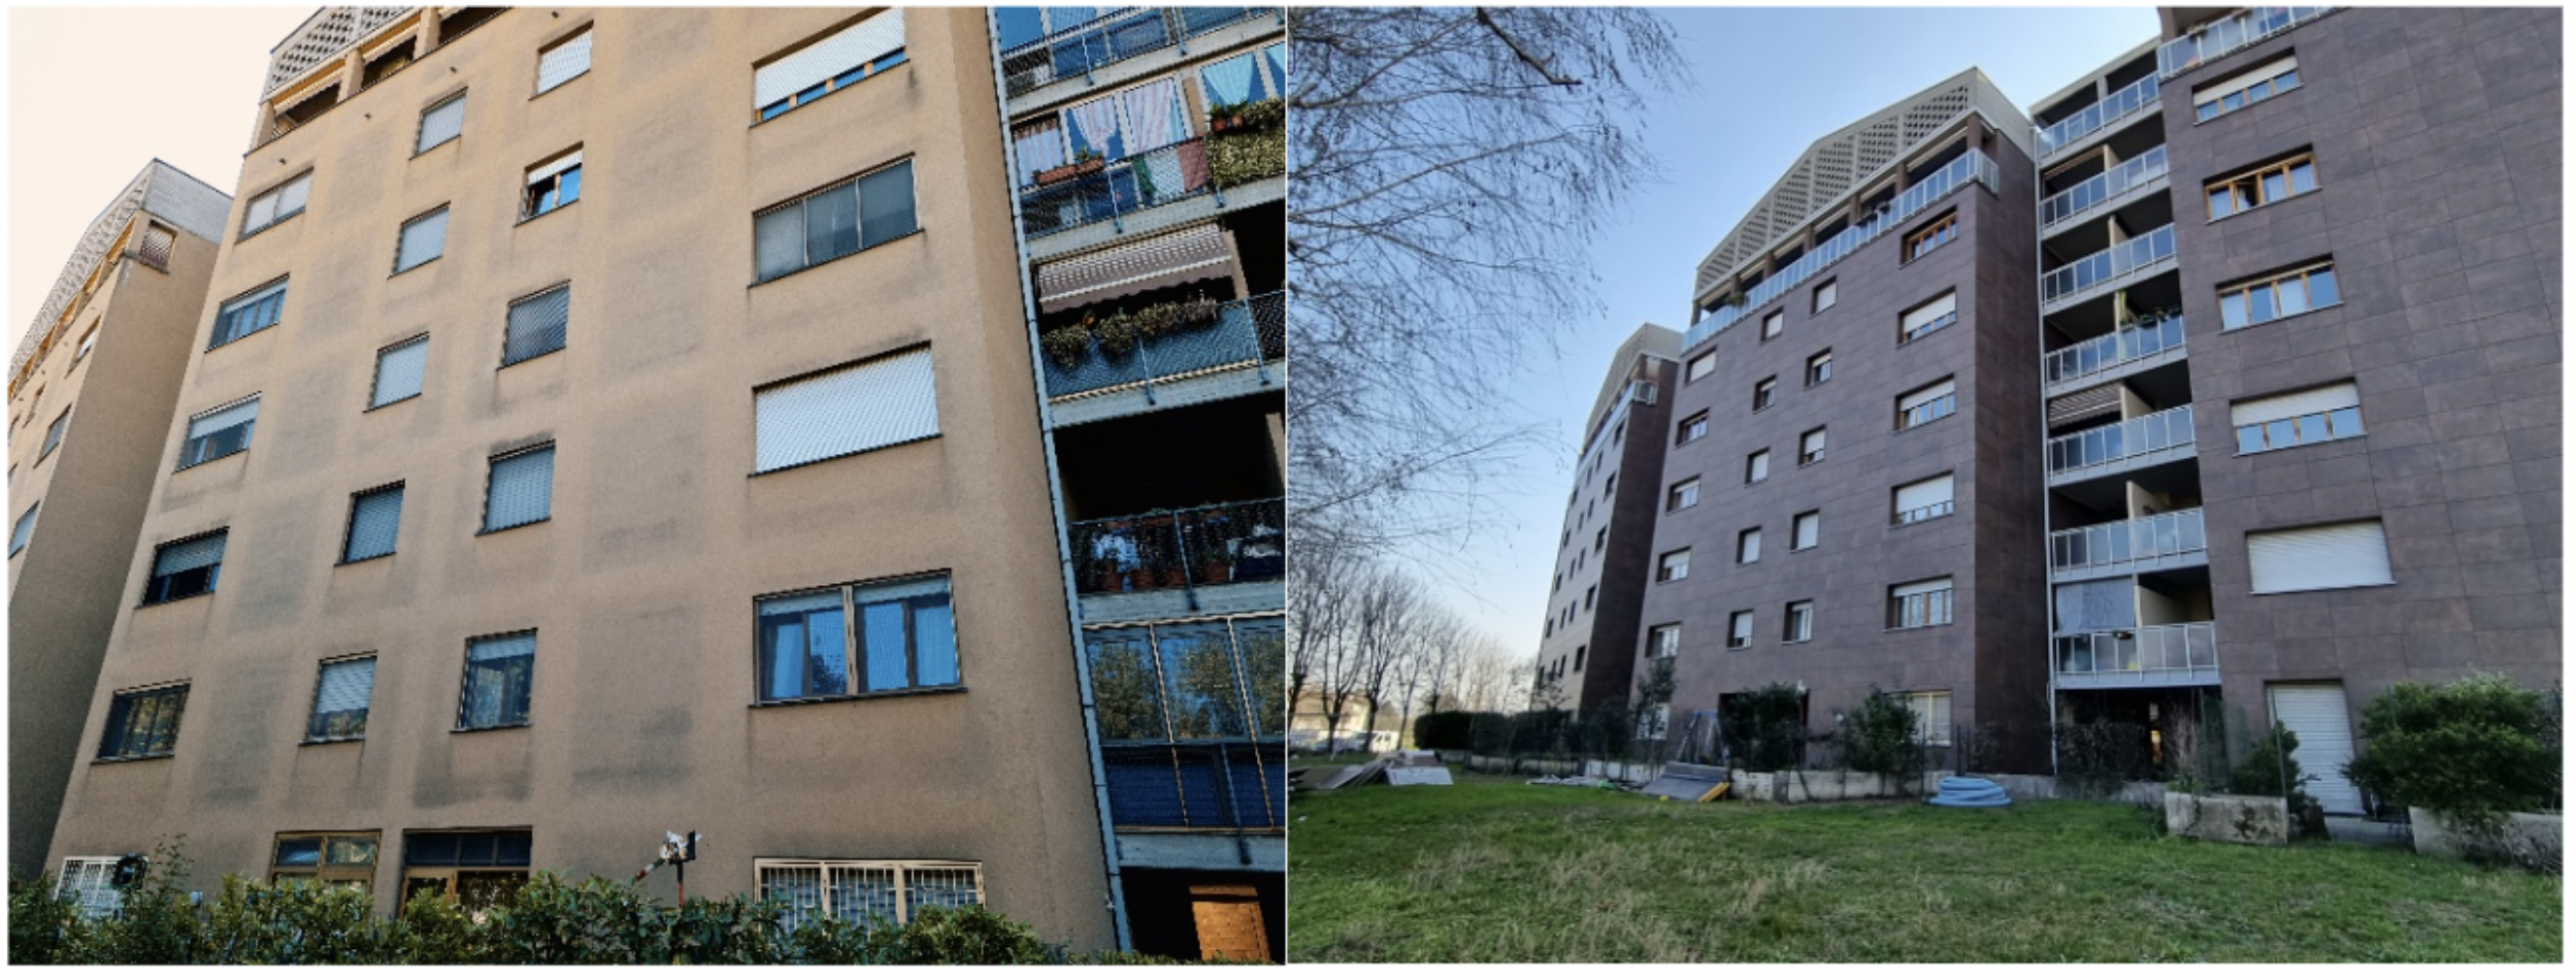 Gli edifici del complesso “Le Torrette” prima e dopo l’intervento.